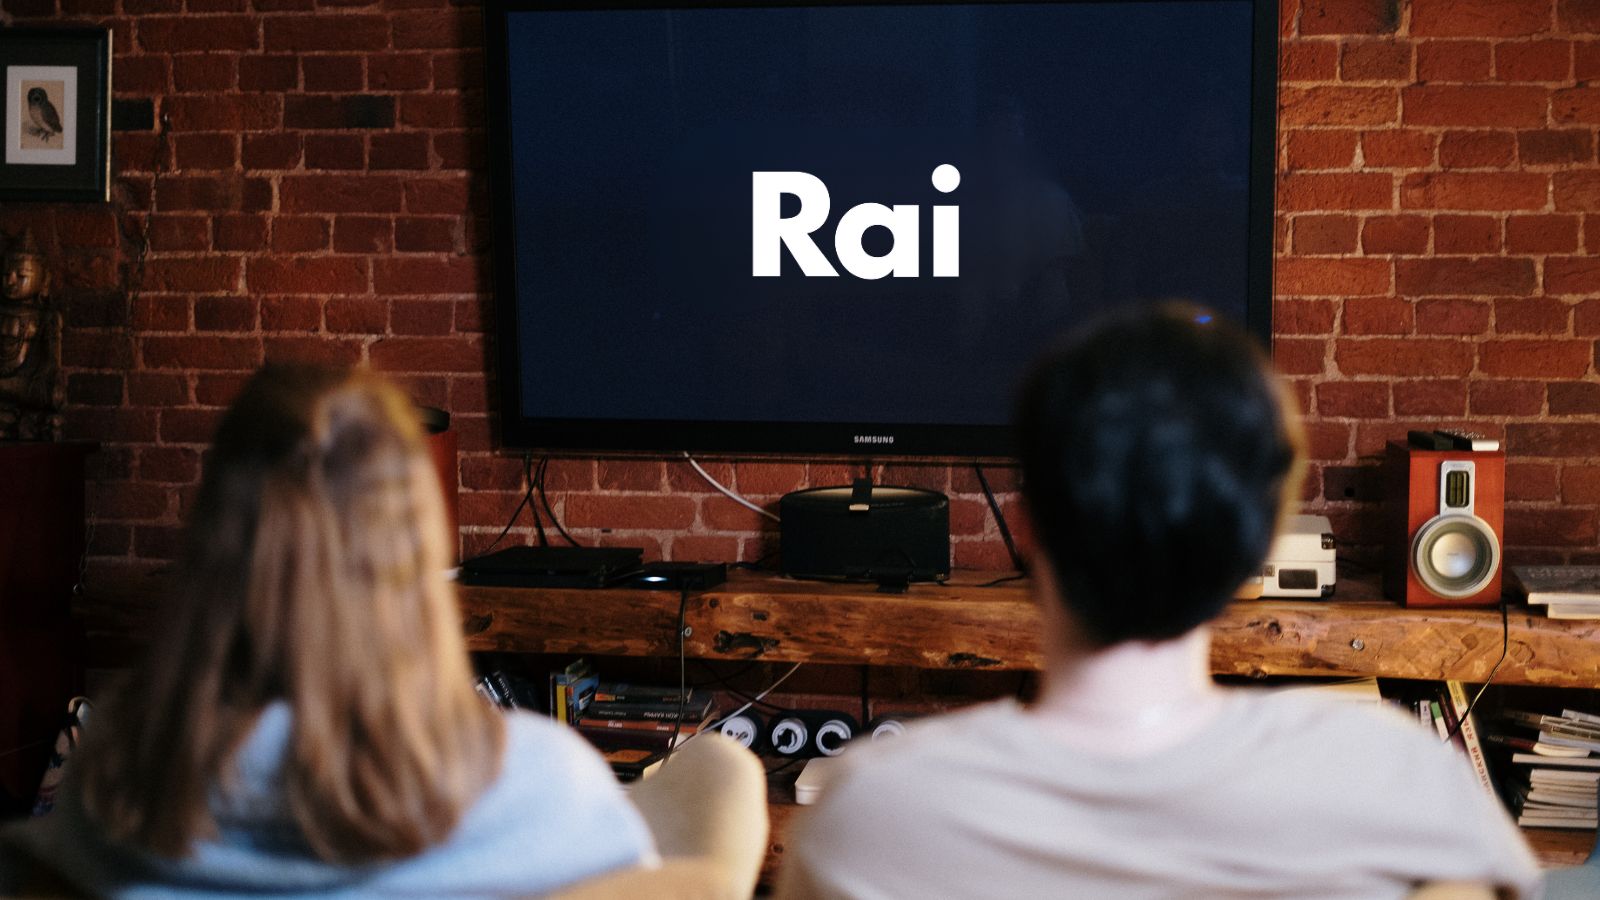 RAI: problemi con una città e il digitale terrestre